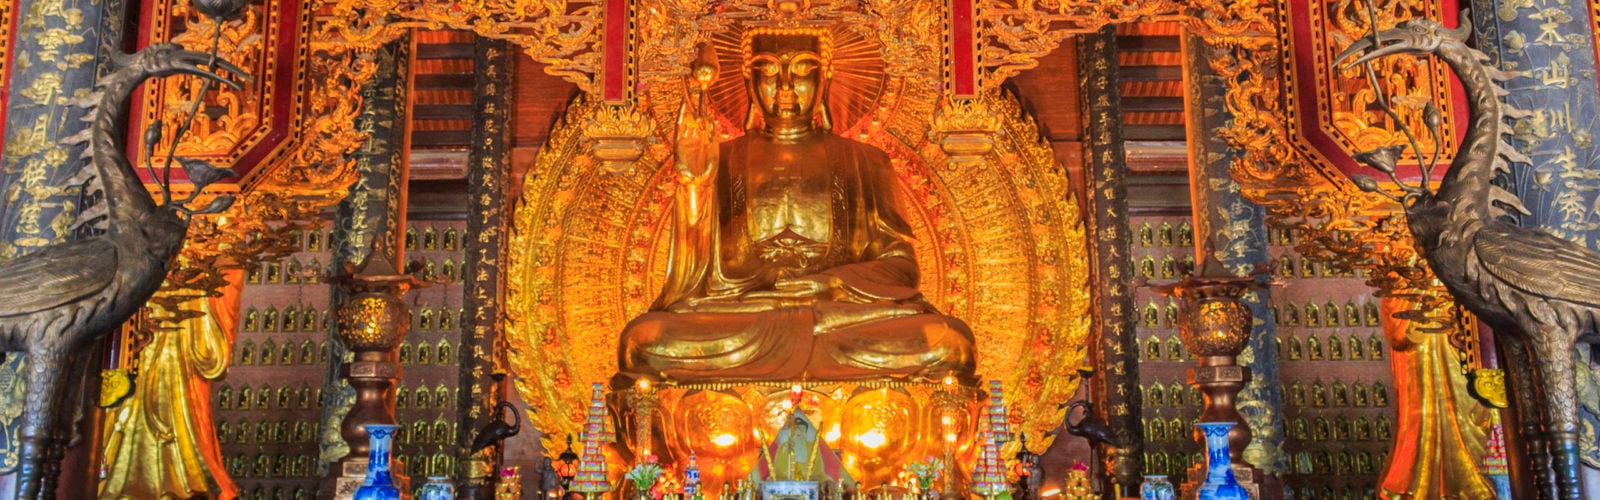 The buddha statue in Bai Dinh pagoda